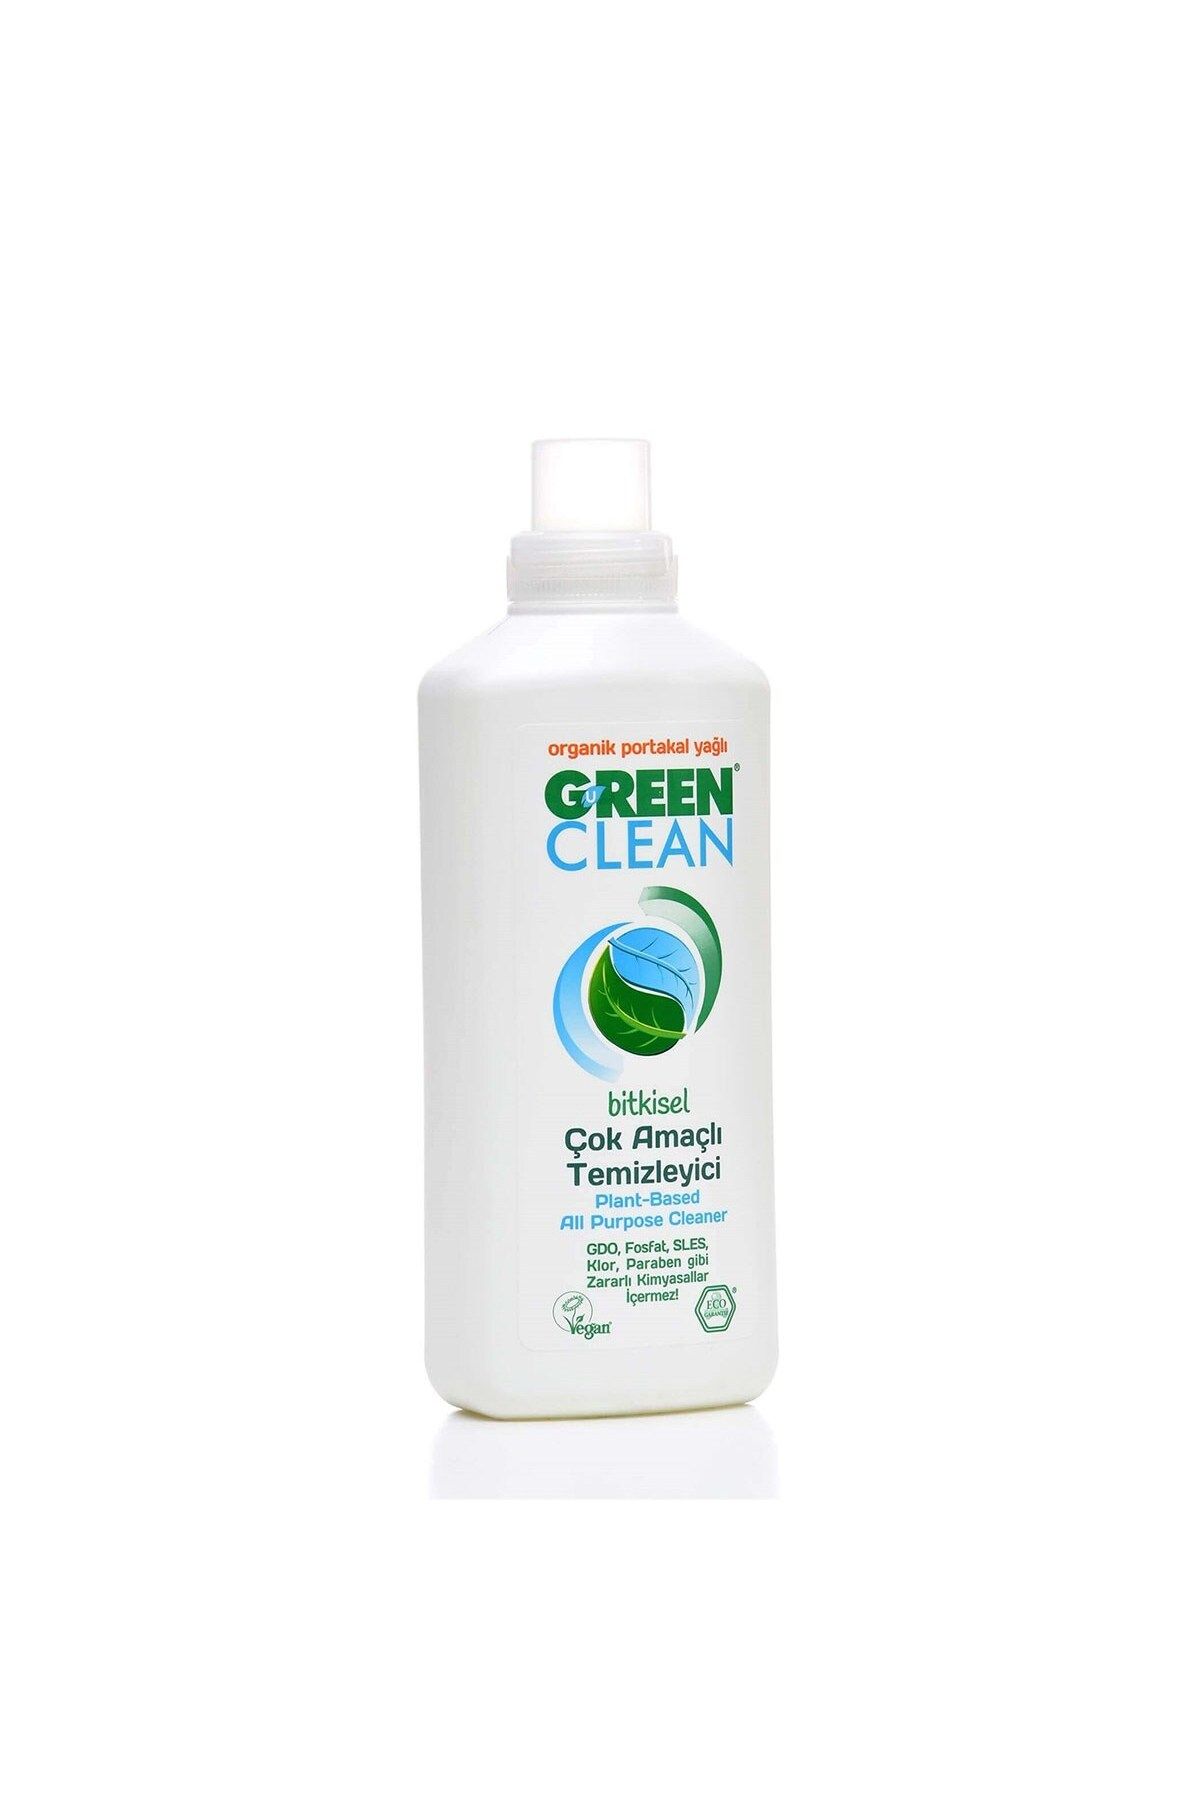 Green Clean Bitkisel Çok Amaçlı Temizleyici Portakal Yağlı 1000 ml